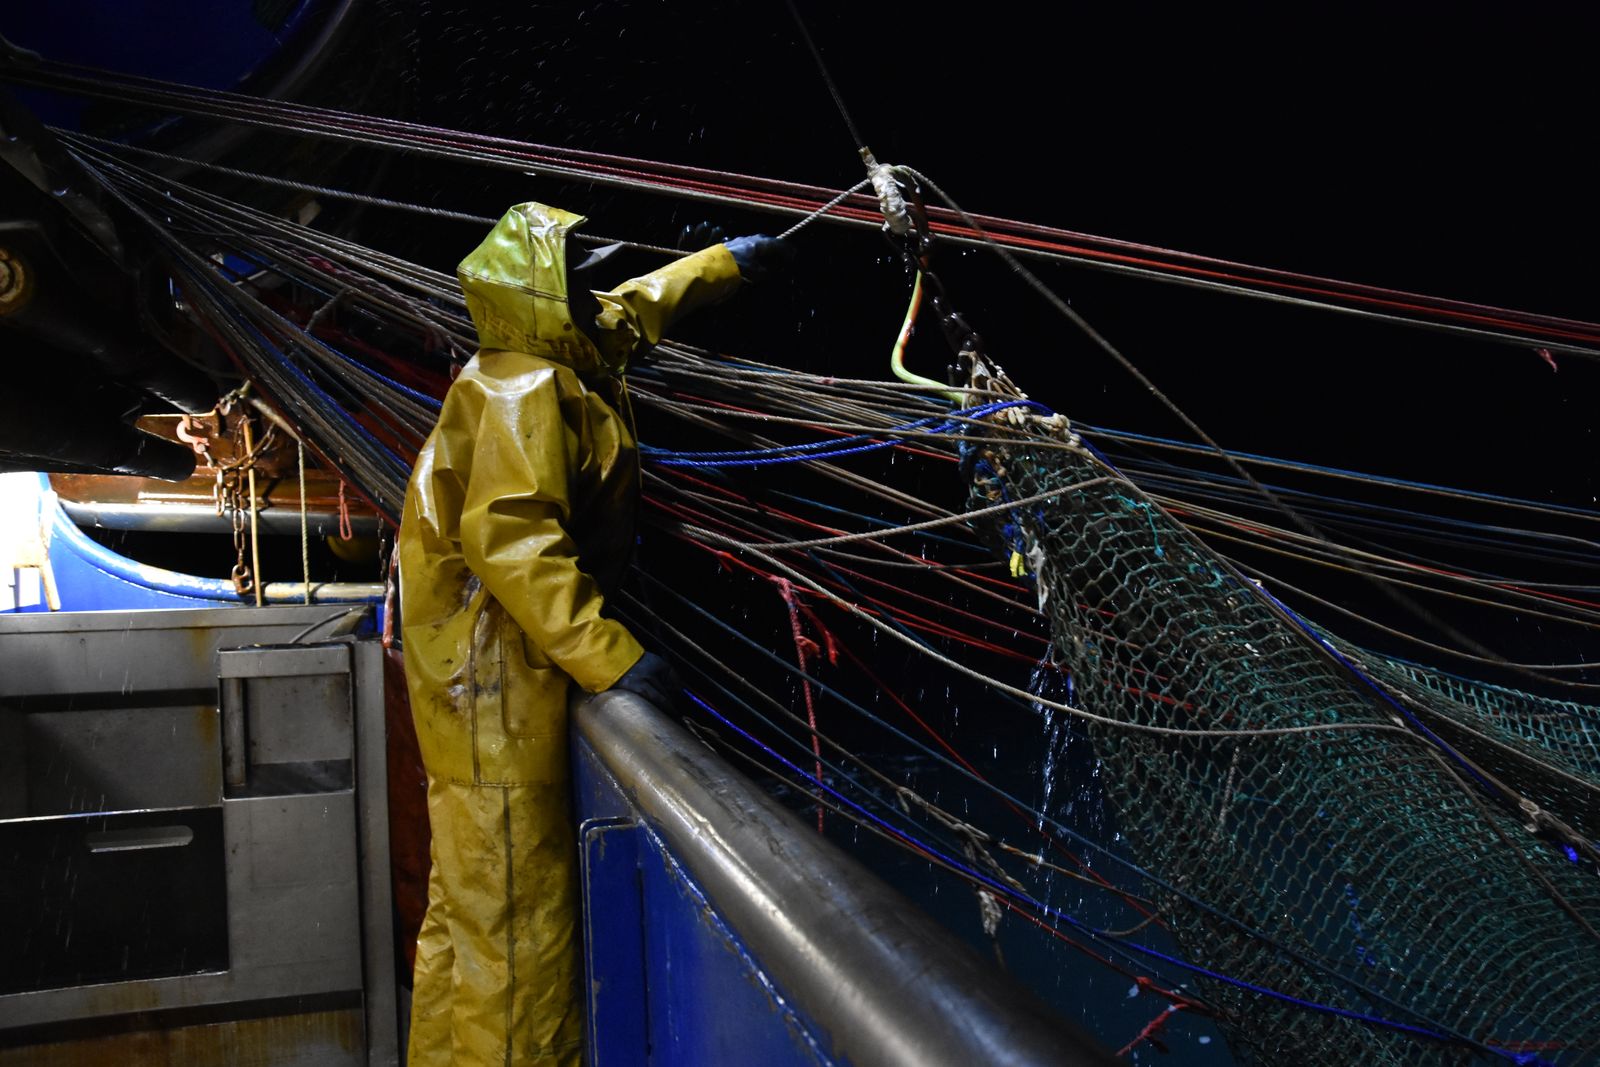 صيادون يصطادون سمك الماكريل في القناة الإنجليزية ويسحبون الشبكة أثناء الليل لمعرفة ما تم صيده يوم 28 سبتمبر 2020 - AFP